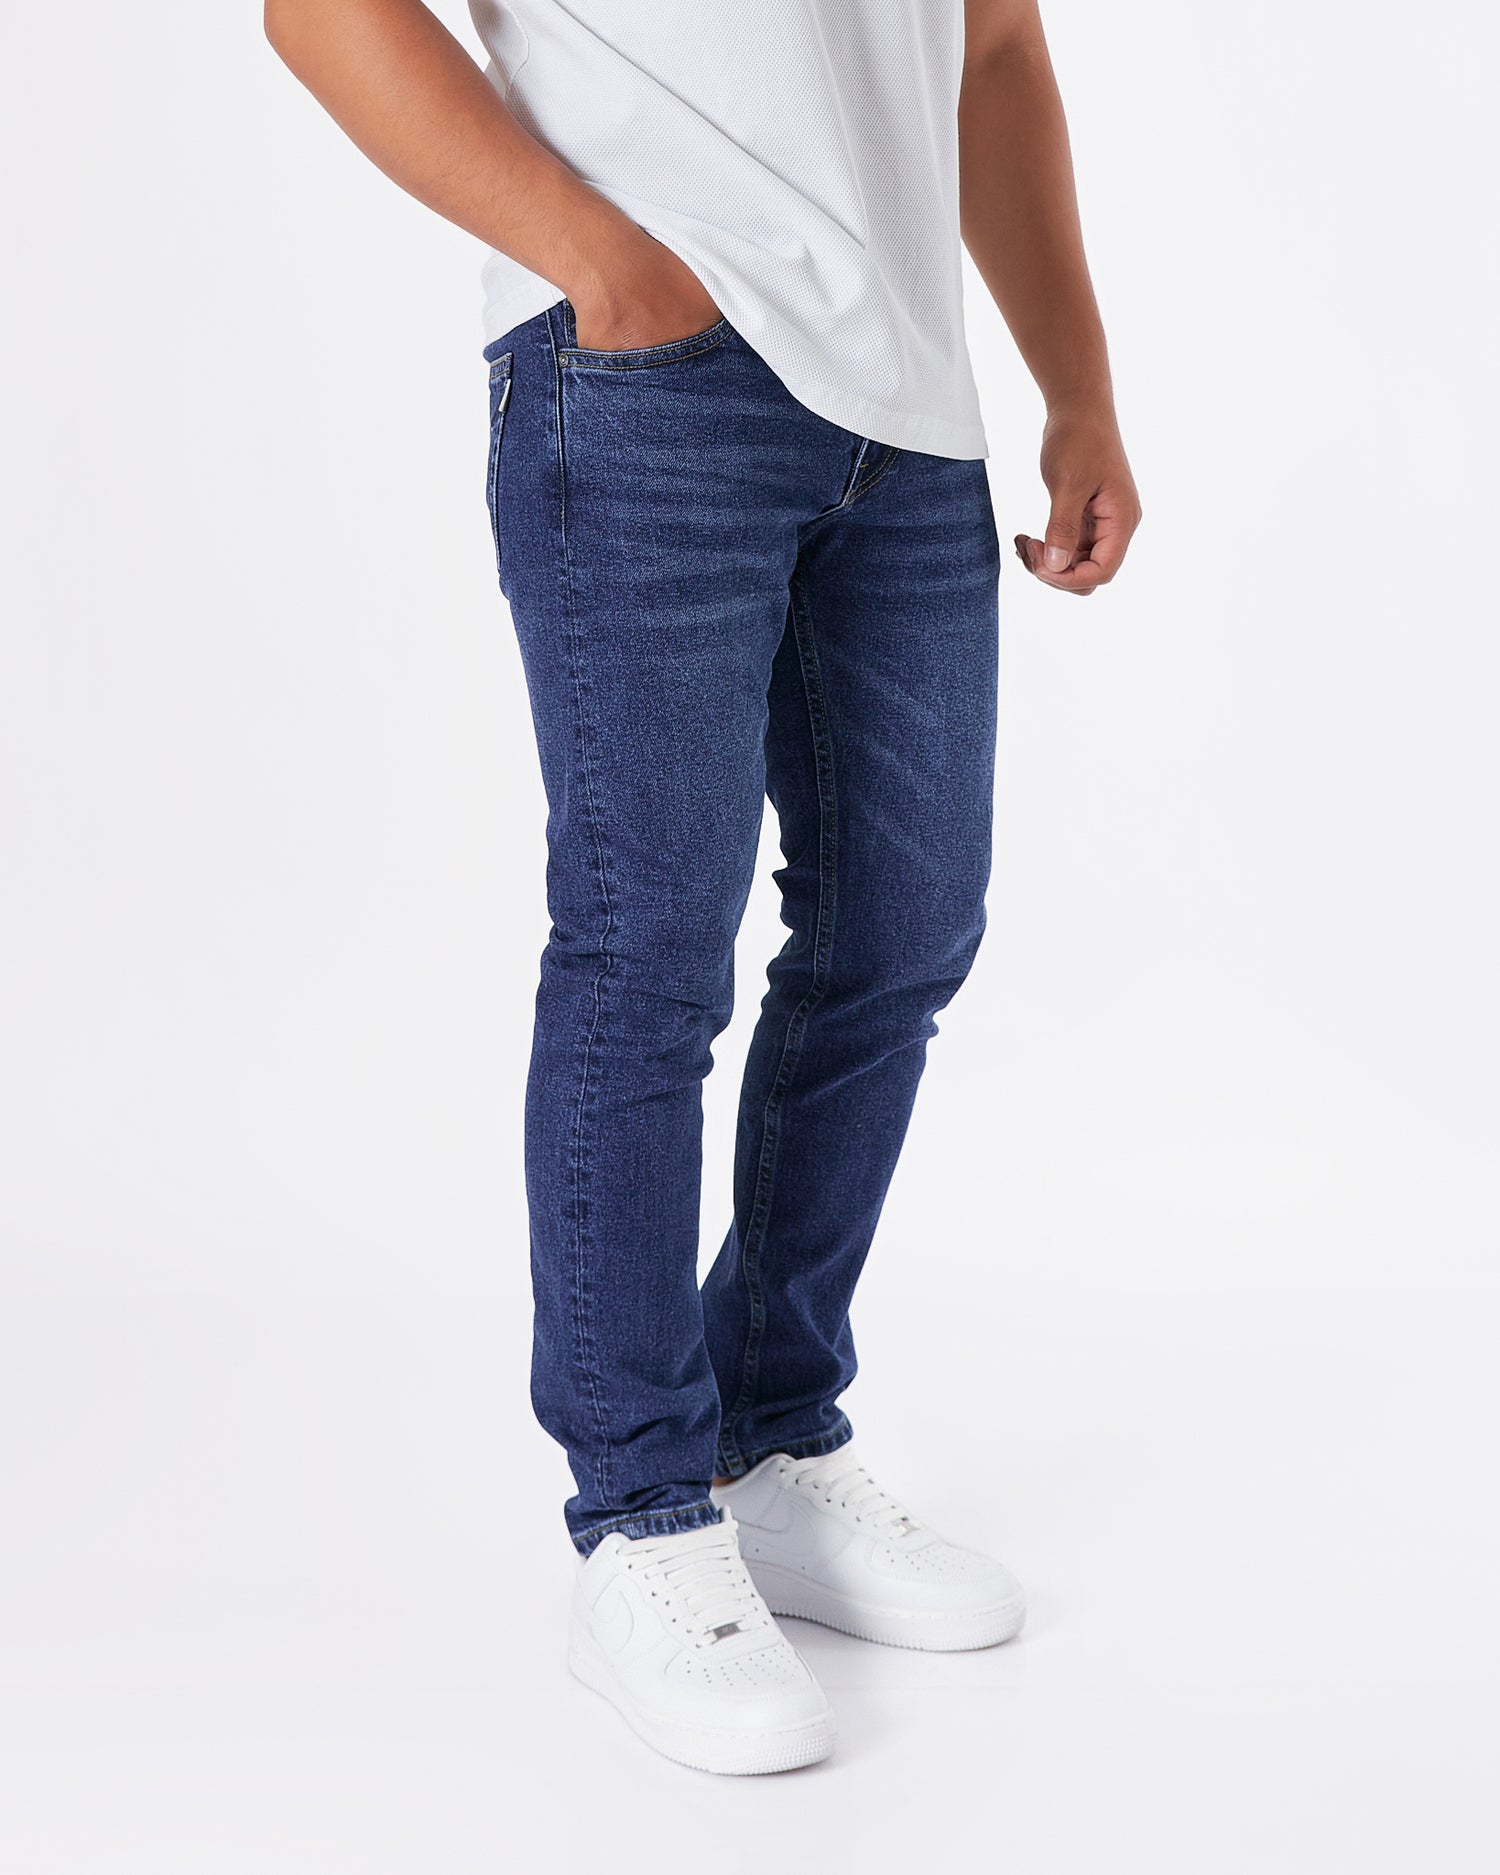 BUR Pocket Embroidered  Men Slim Fit Jeans 24.90